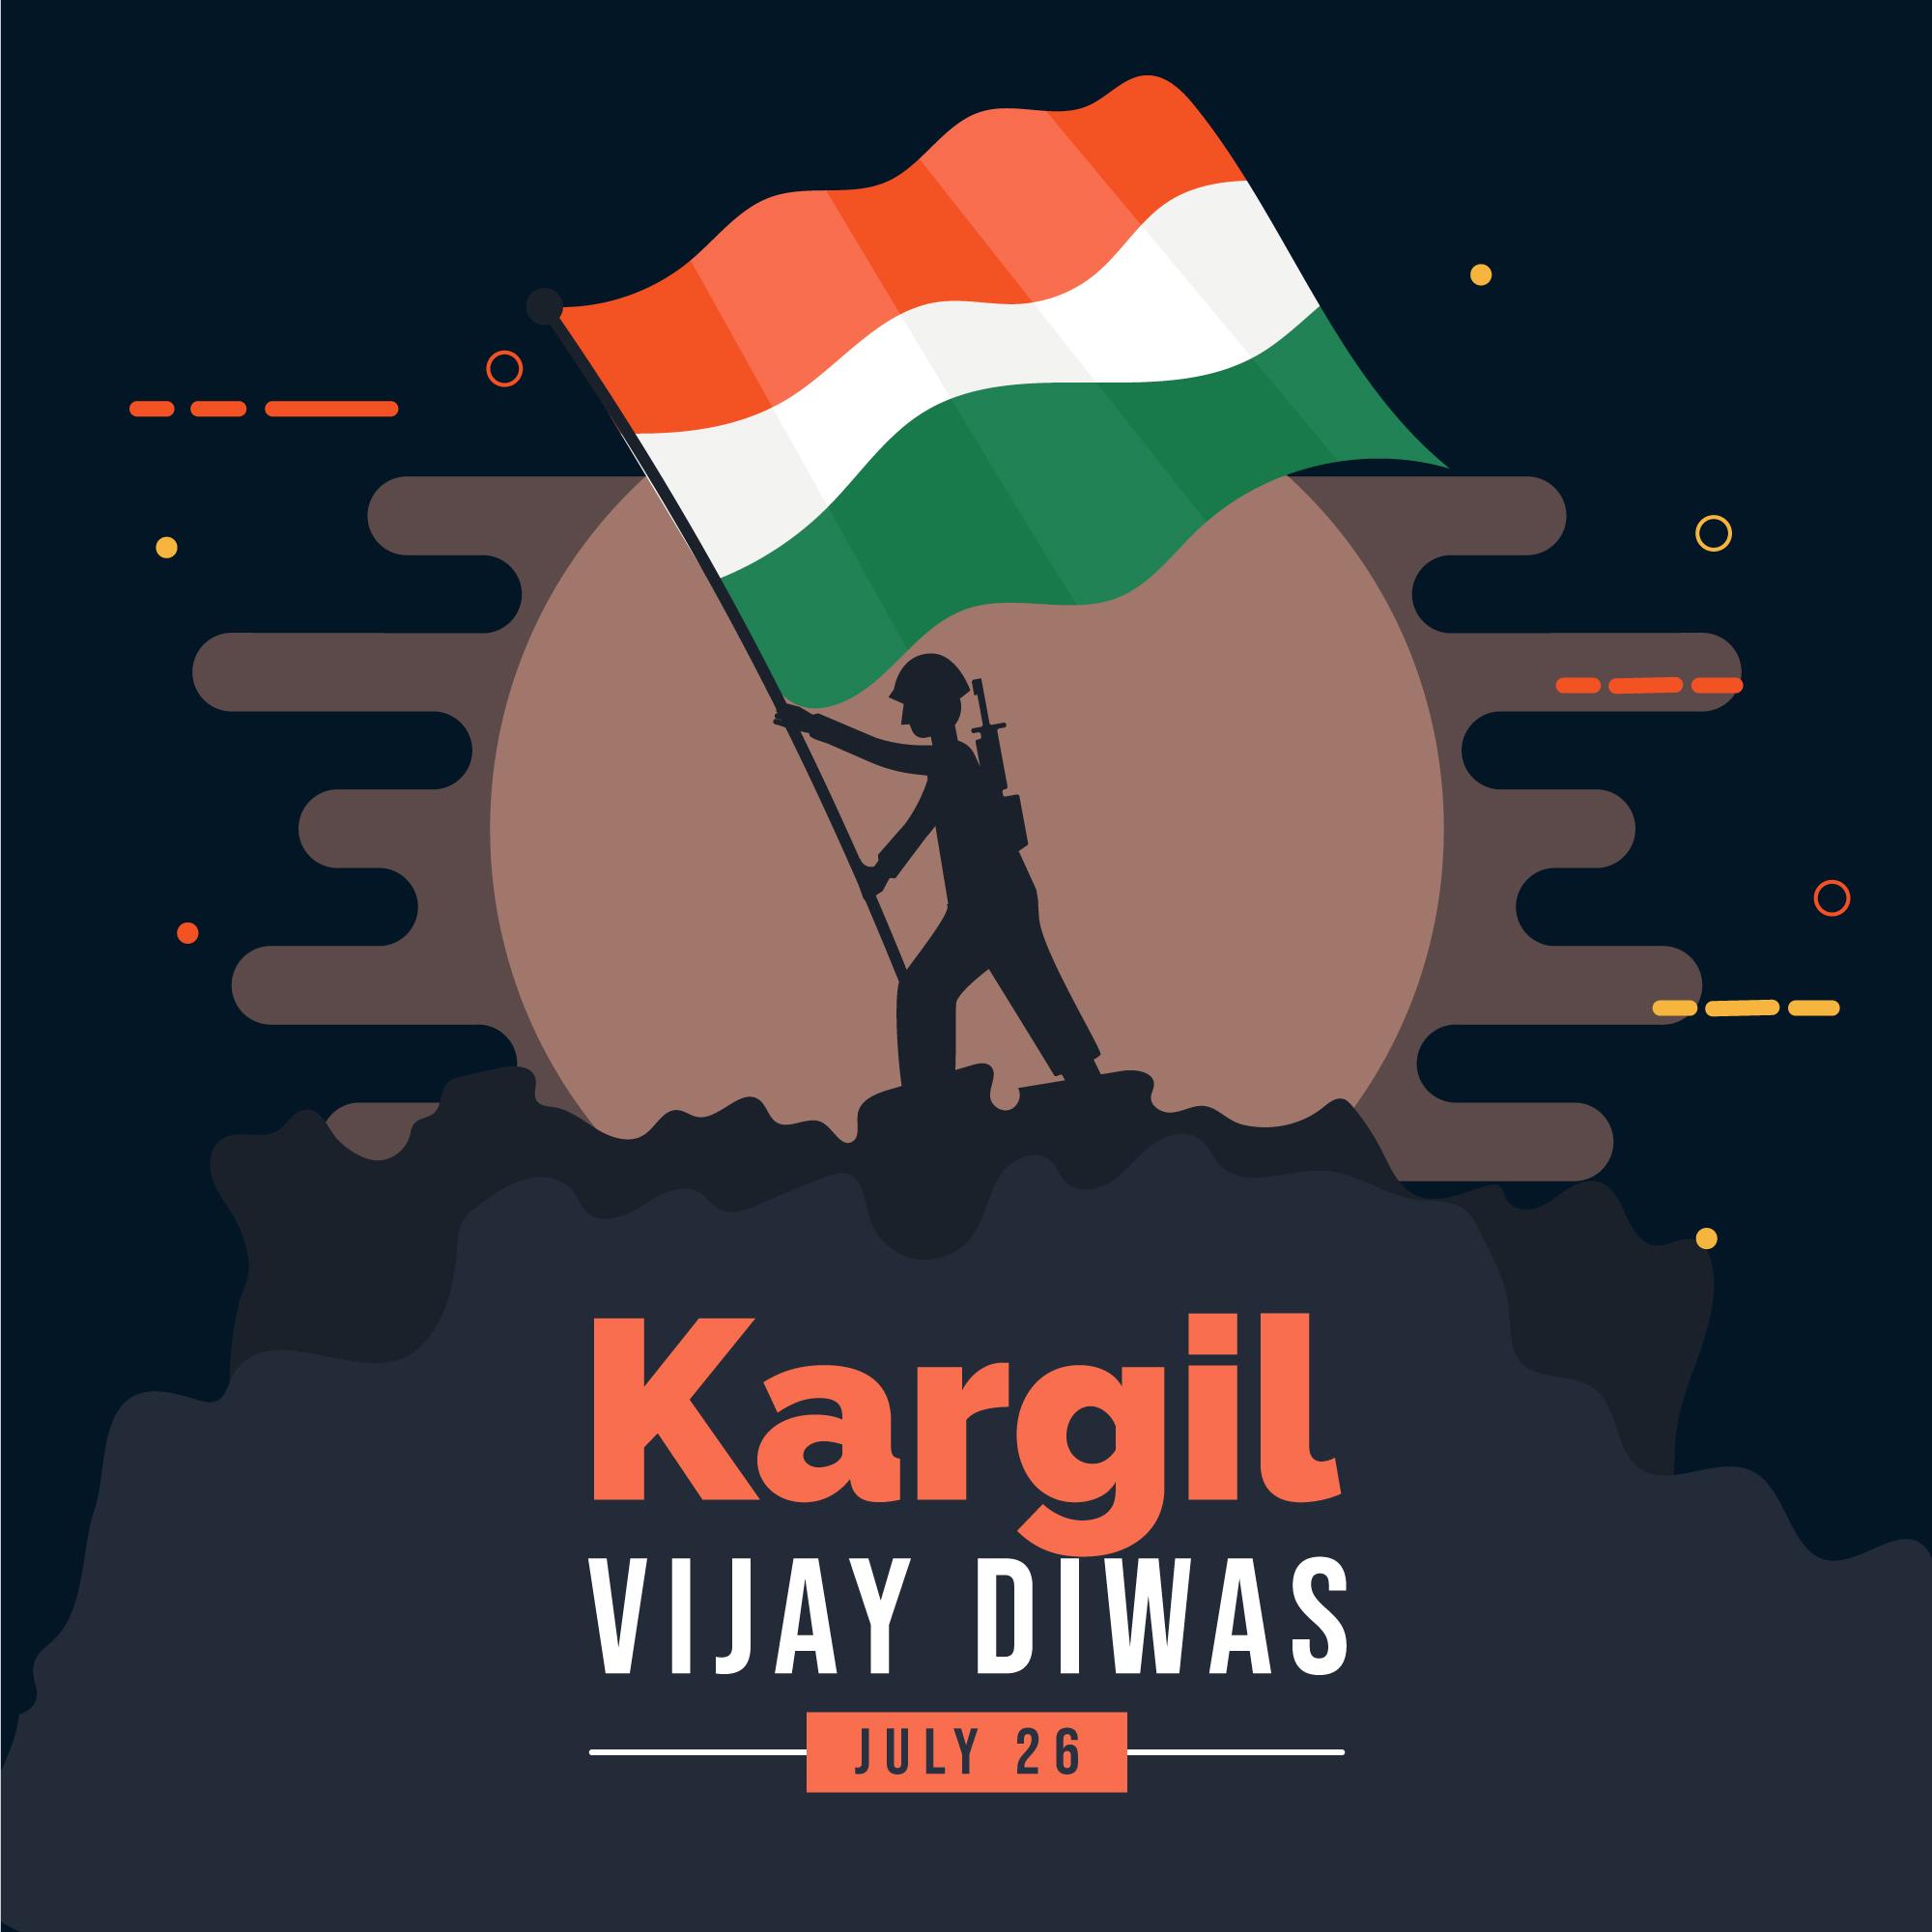 Kargil Vijay Diwas poems to help celebrate India's victory in the Kargil War